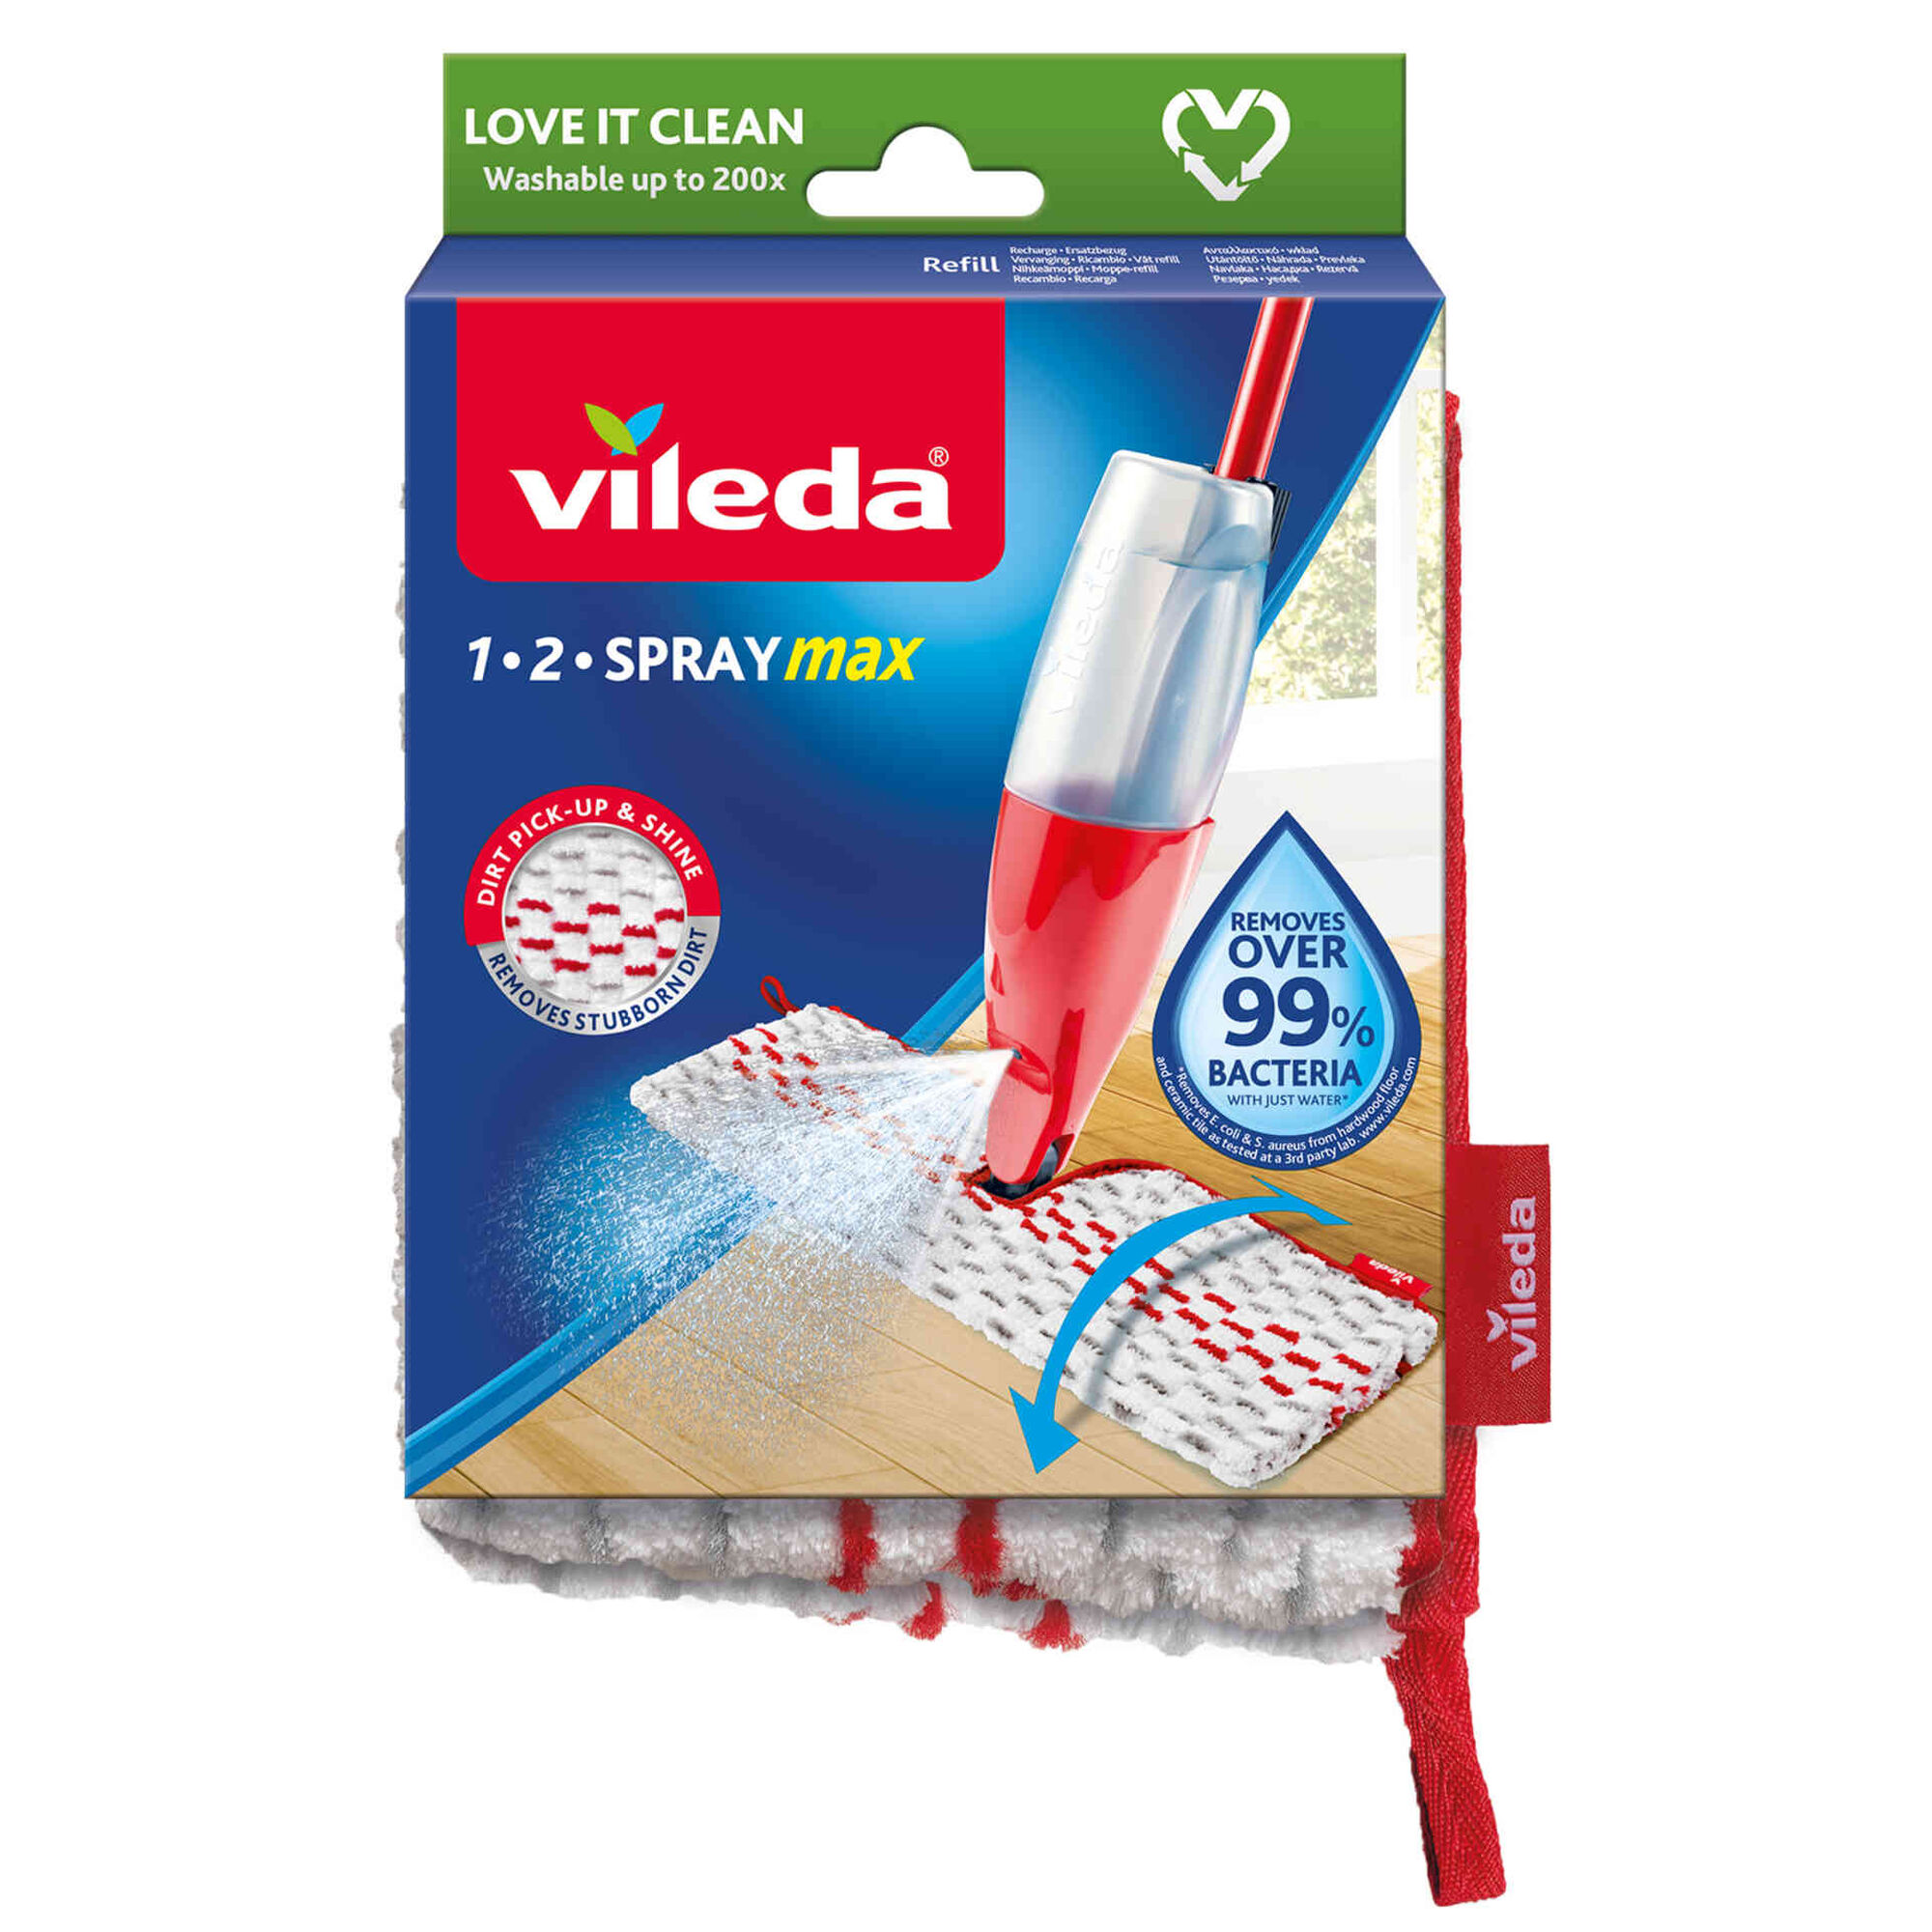 Vileda® Mopa Spray & Clean